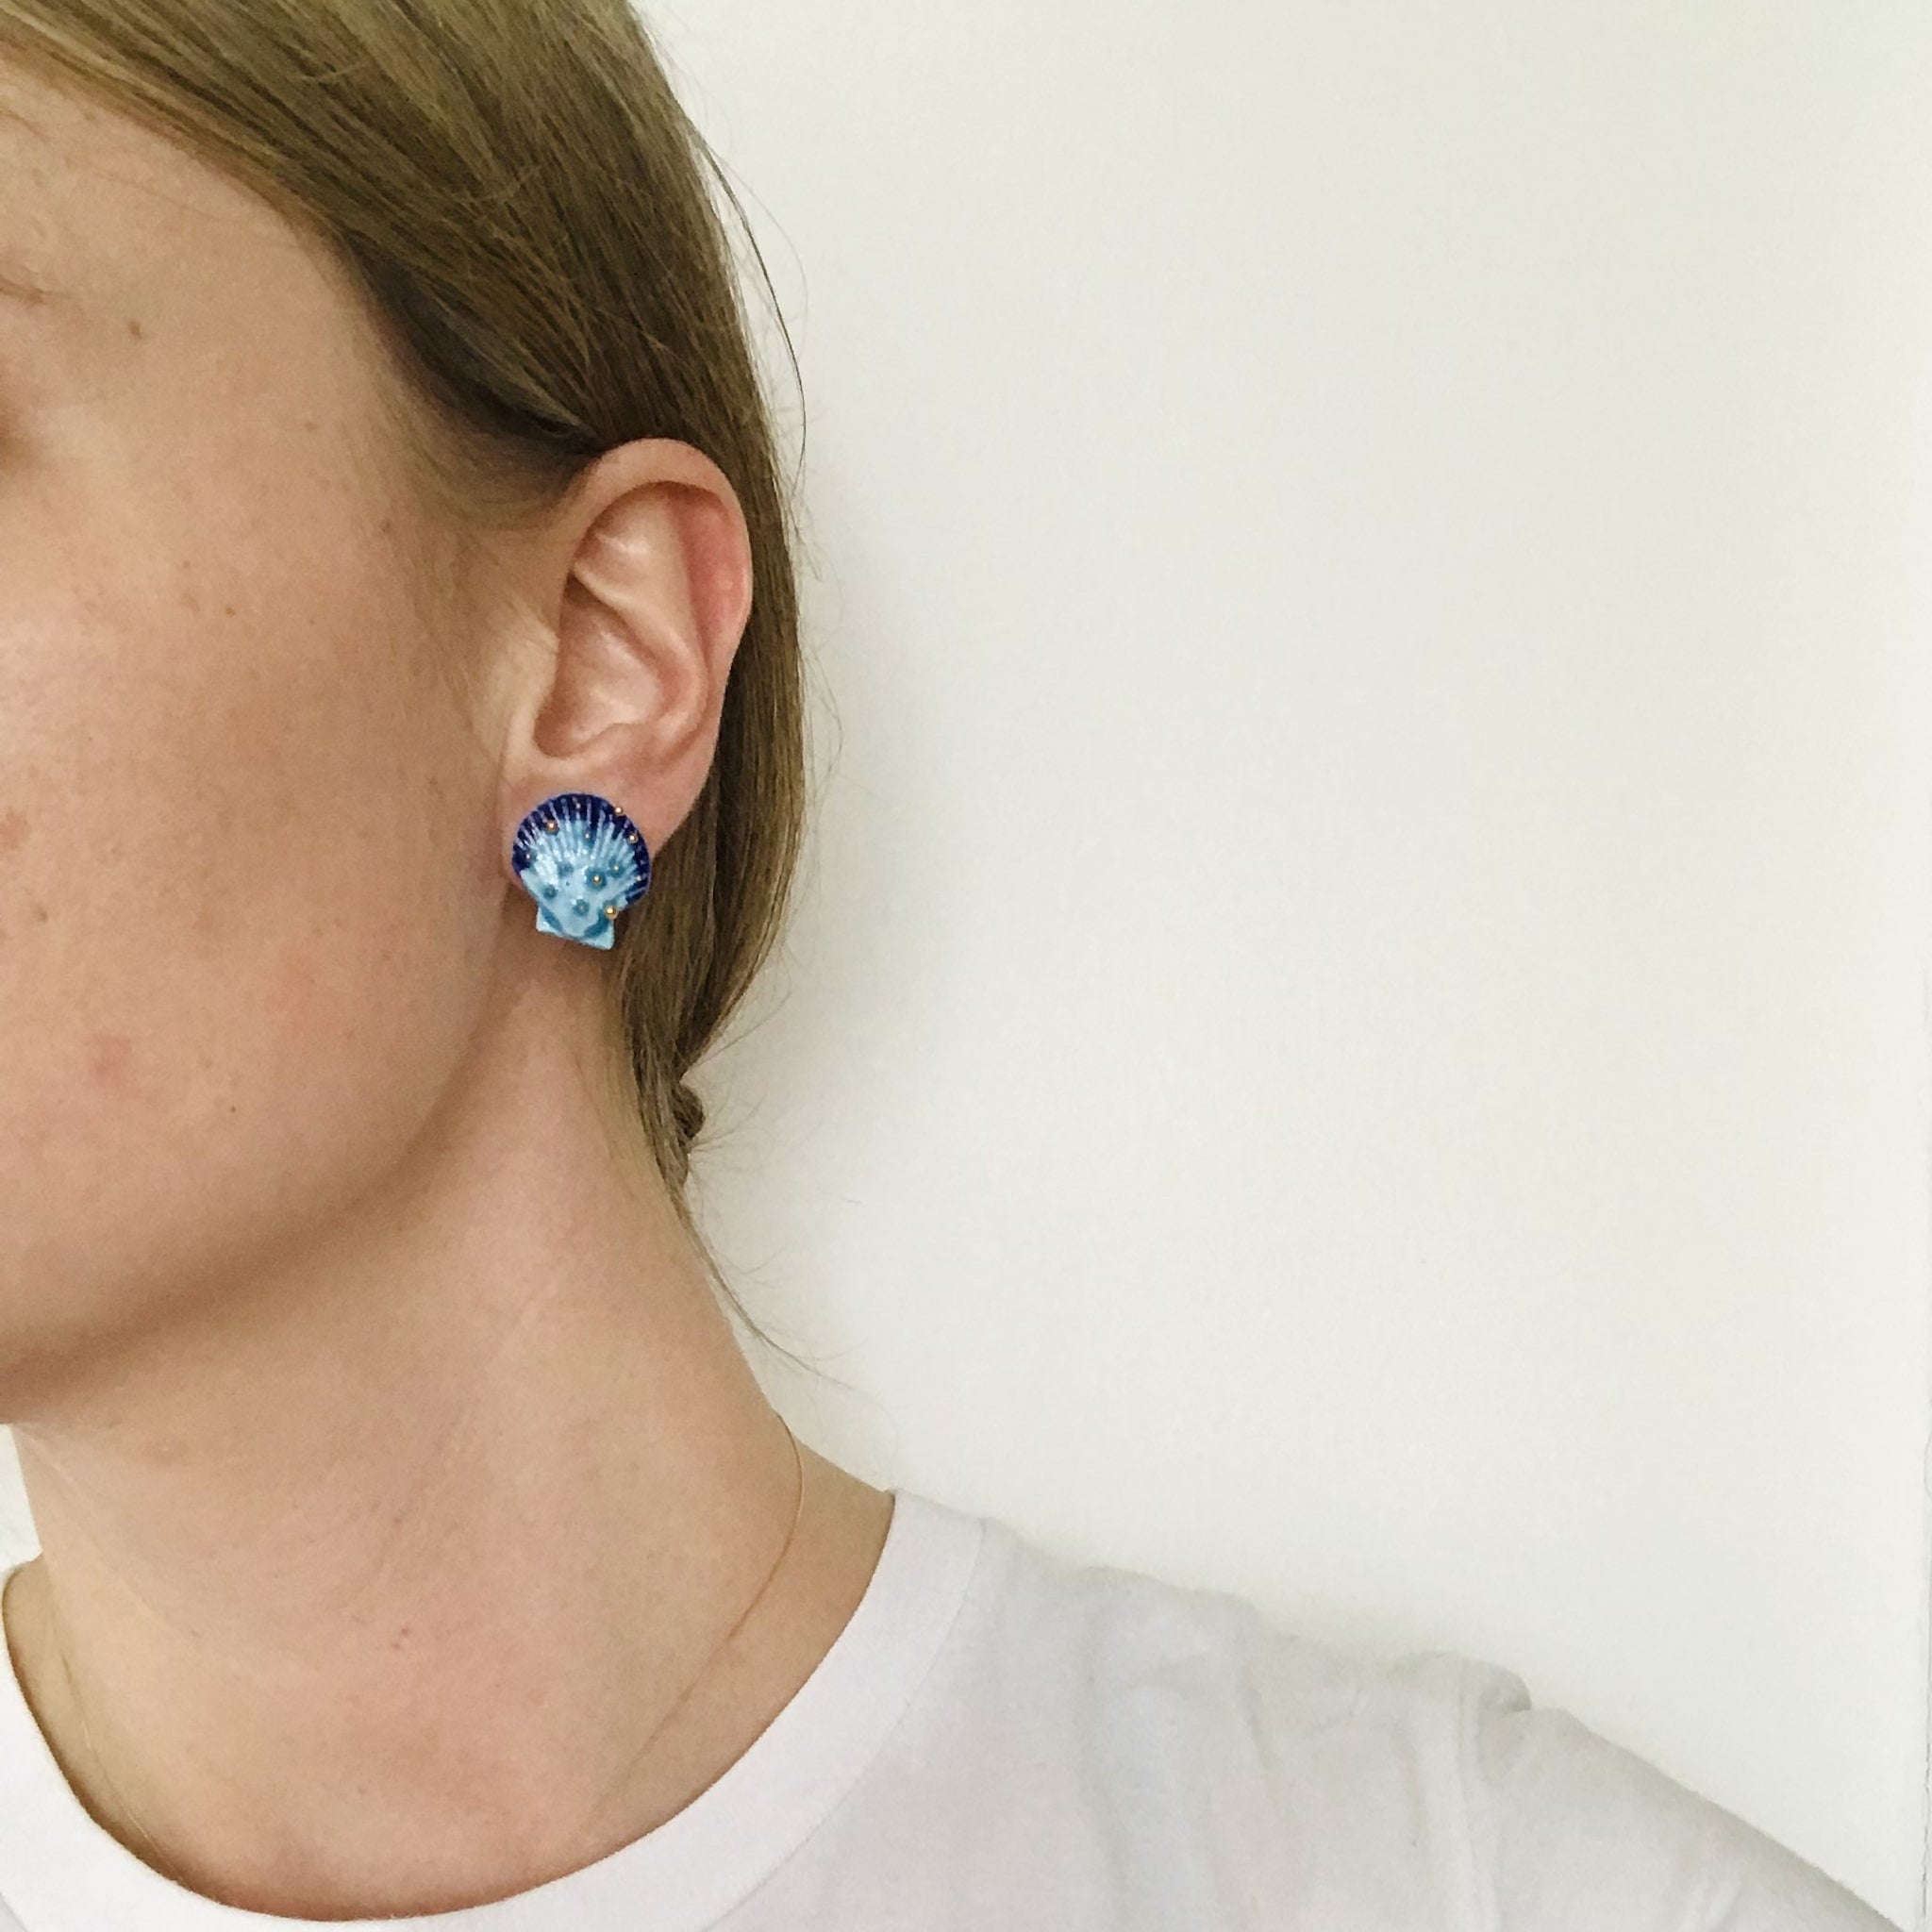 Bea_wearing_blue_seashell_earrings-min.jpg